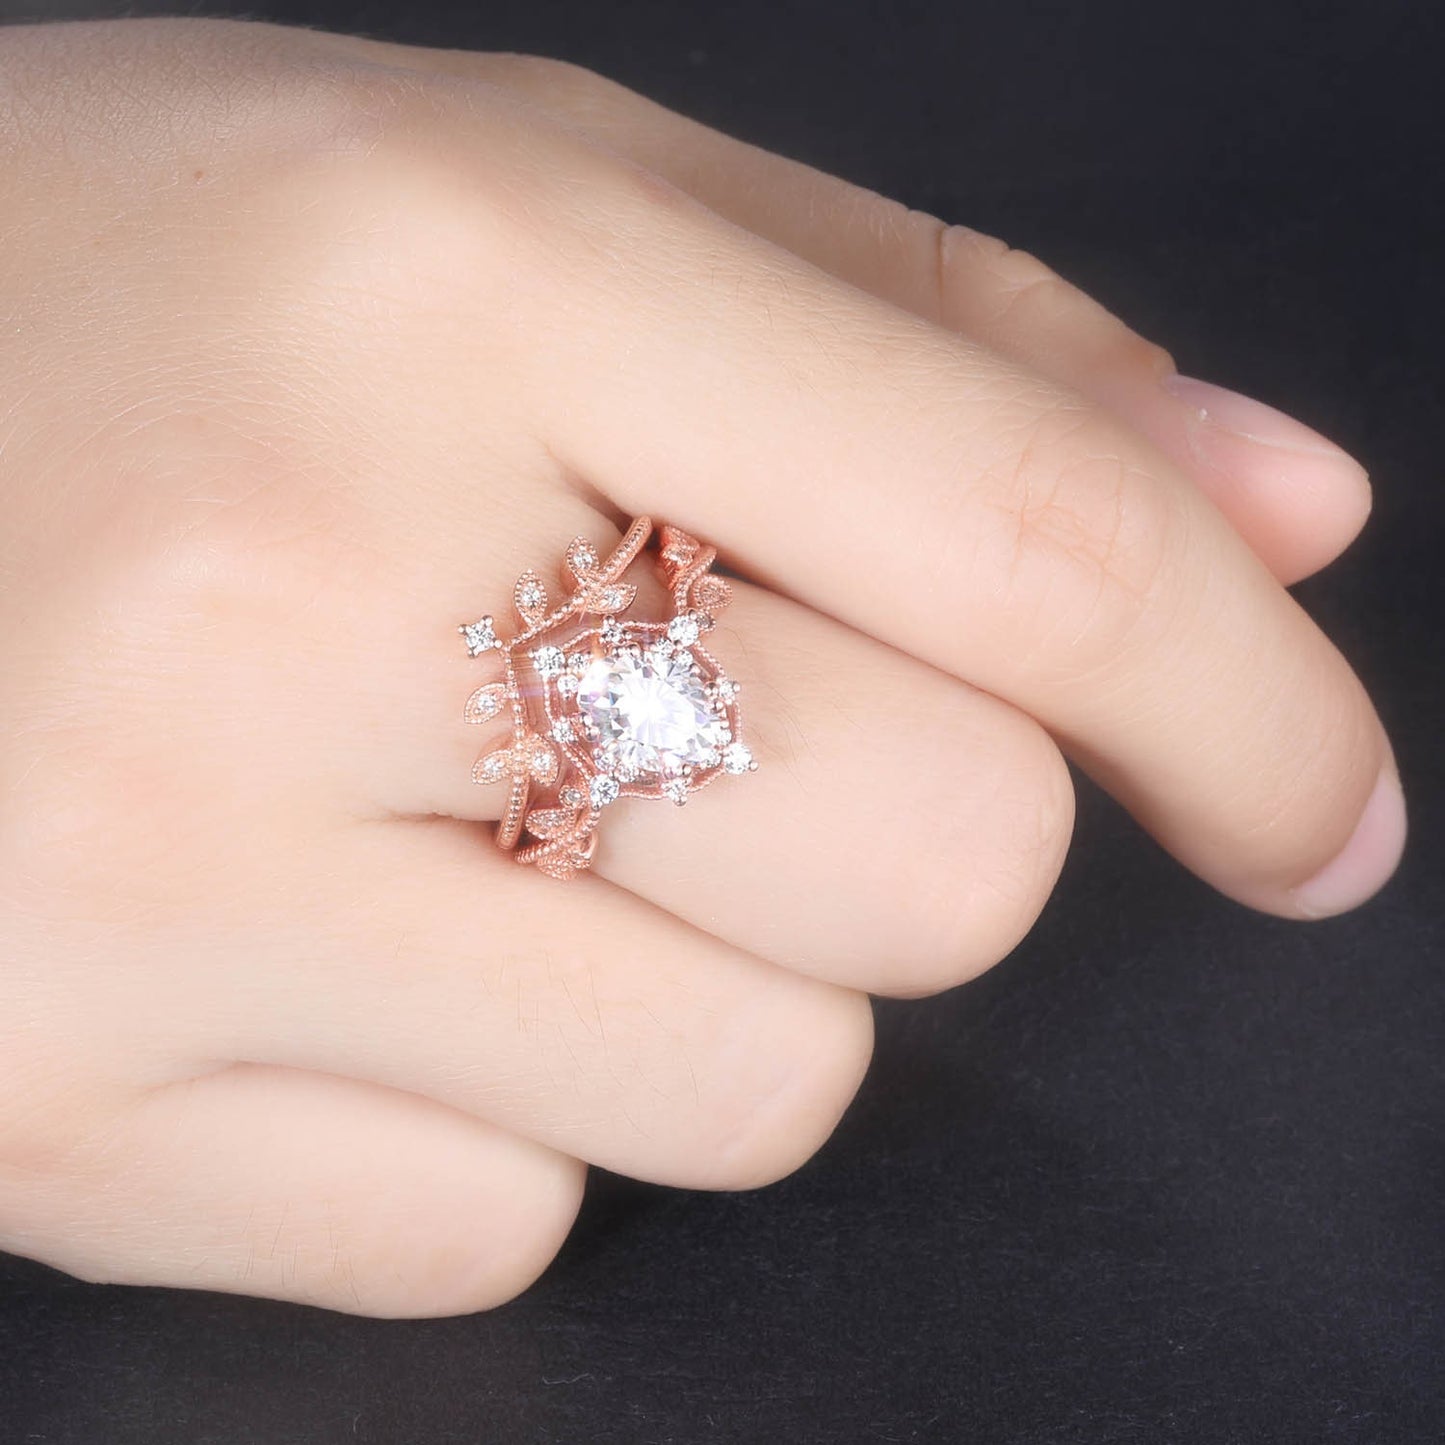 Oval shaped moissanite ring set rose gold engagement ring diamond matching band brilliant moissanite art deco milgrain ring for women